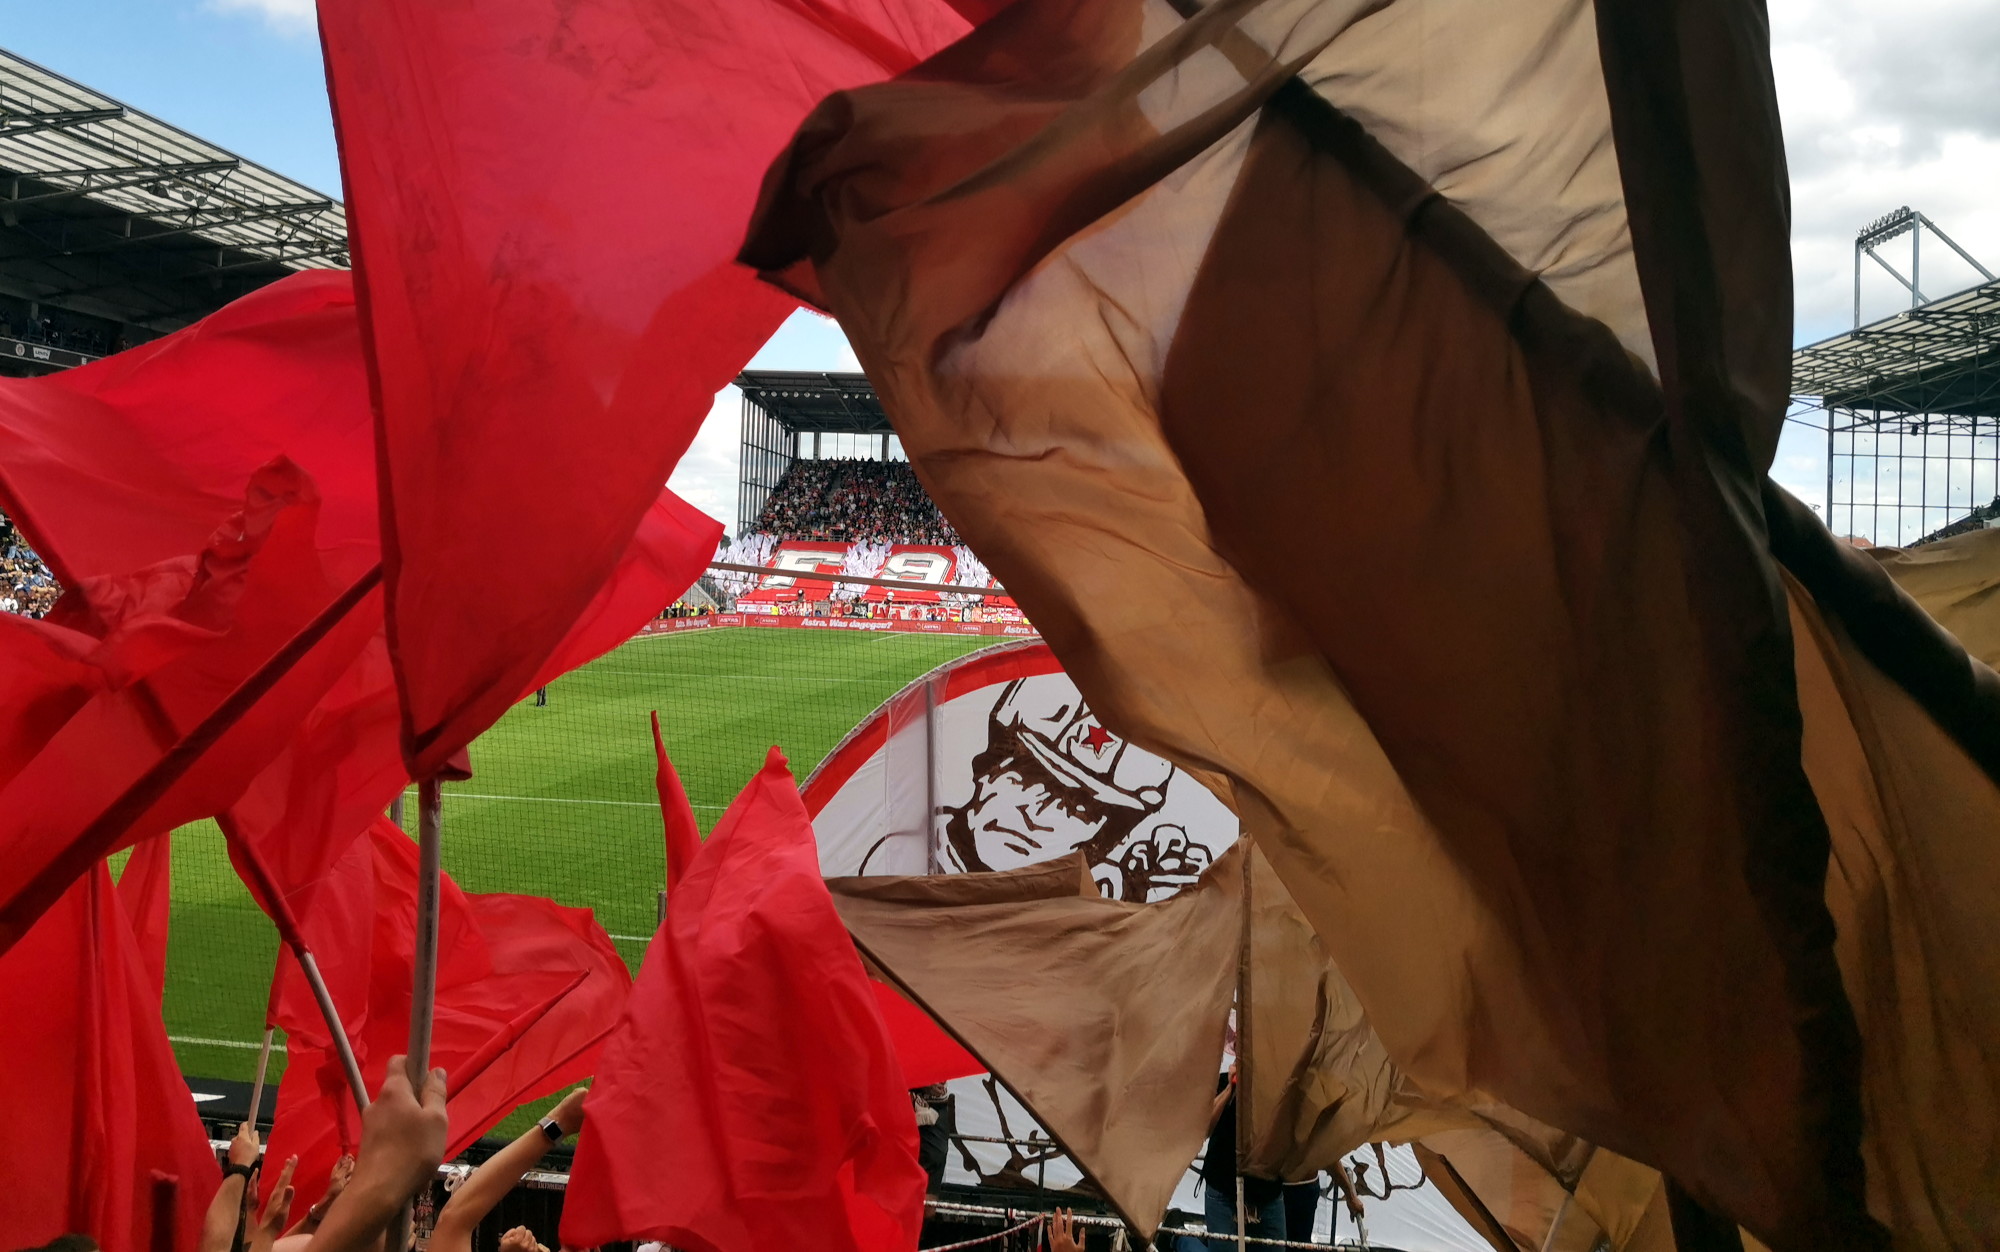 Zu sehen sind viele rote und braune Flaggen und ein Teil der Gästechoreo im Millerntor-Stadion beim 2. Saisonspiel vom FC St. Pauli gegen Fortuna Düsseldorf